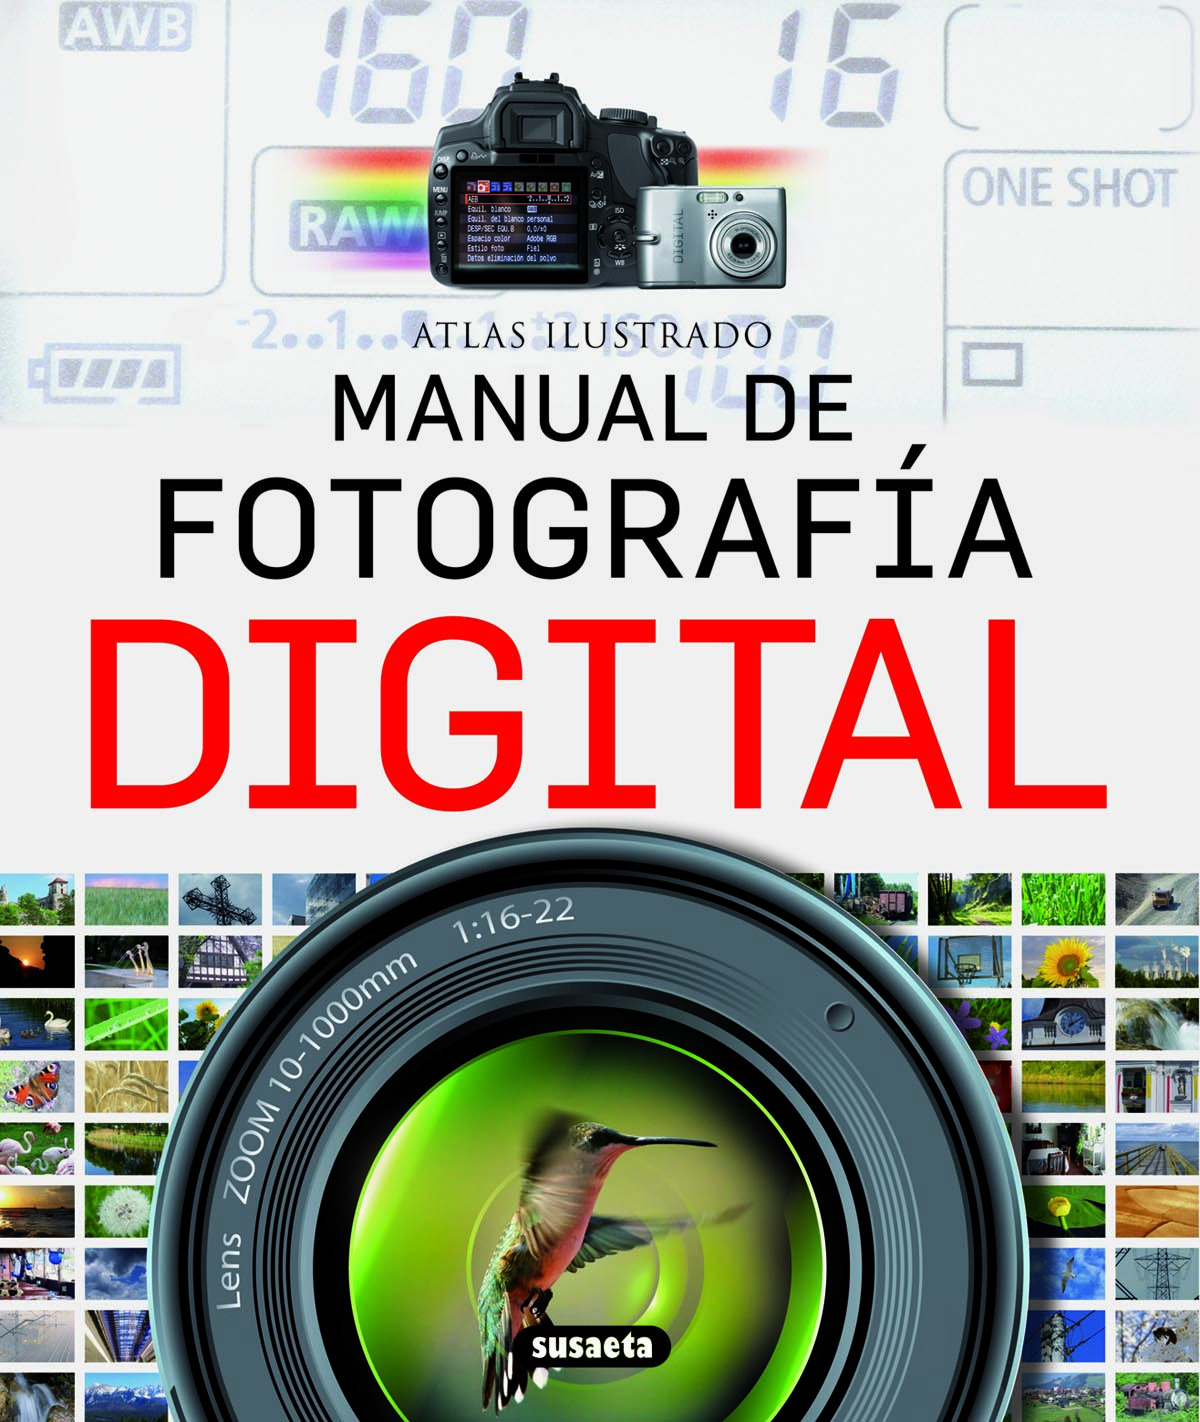 Atlas ilustrado manual de fotografía digital - Varios autores